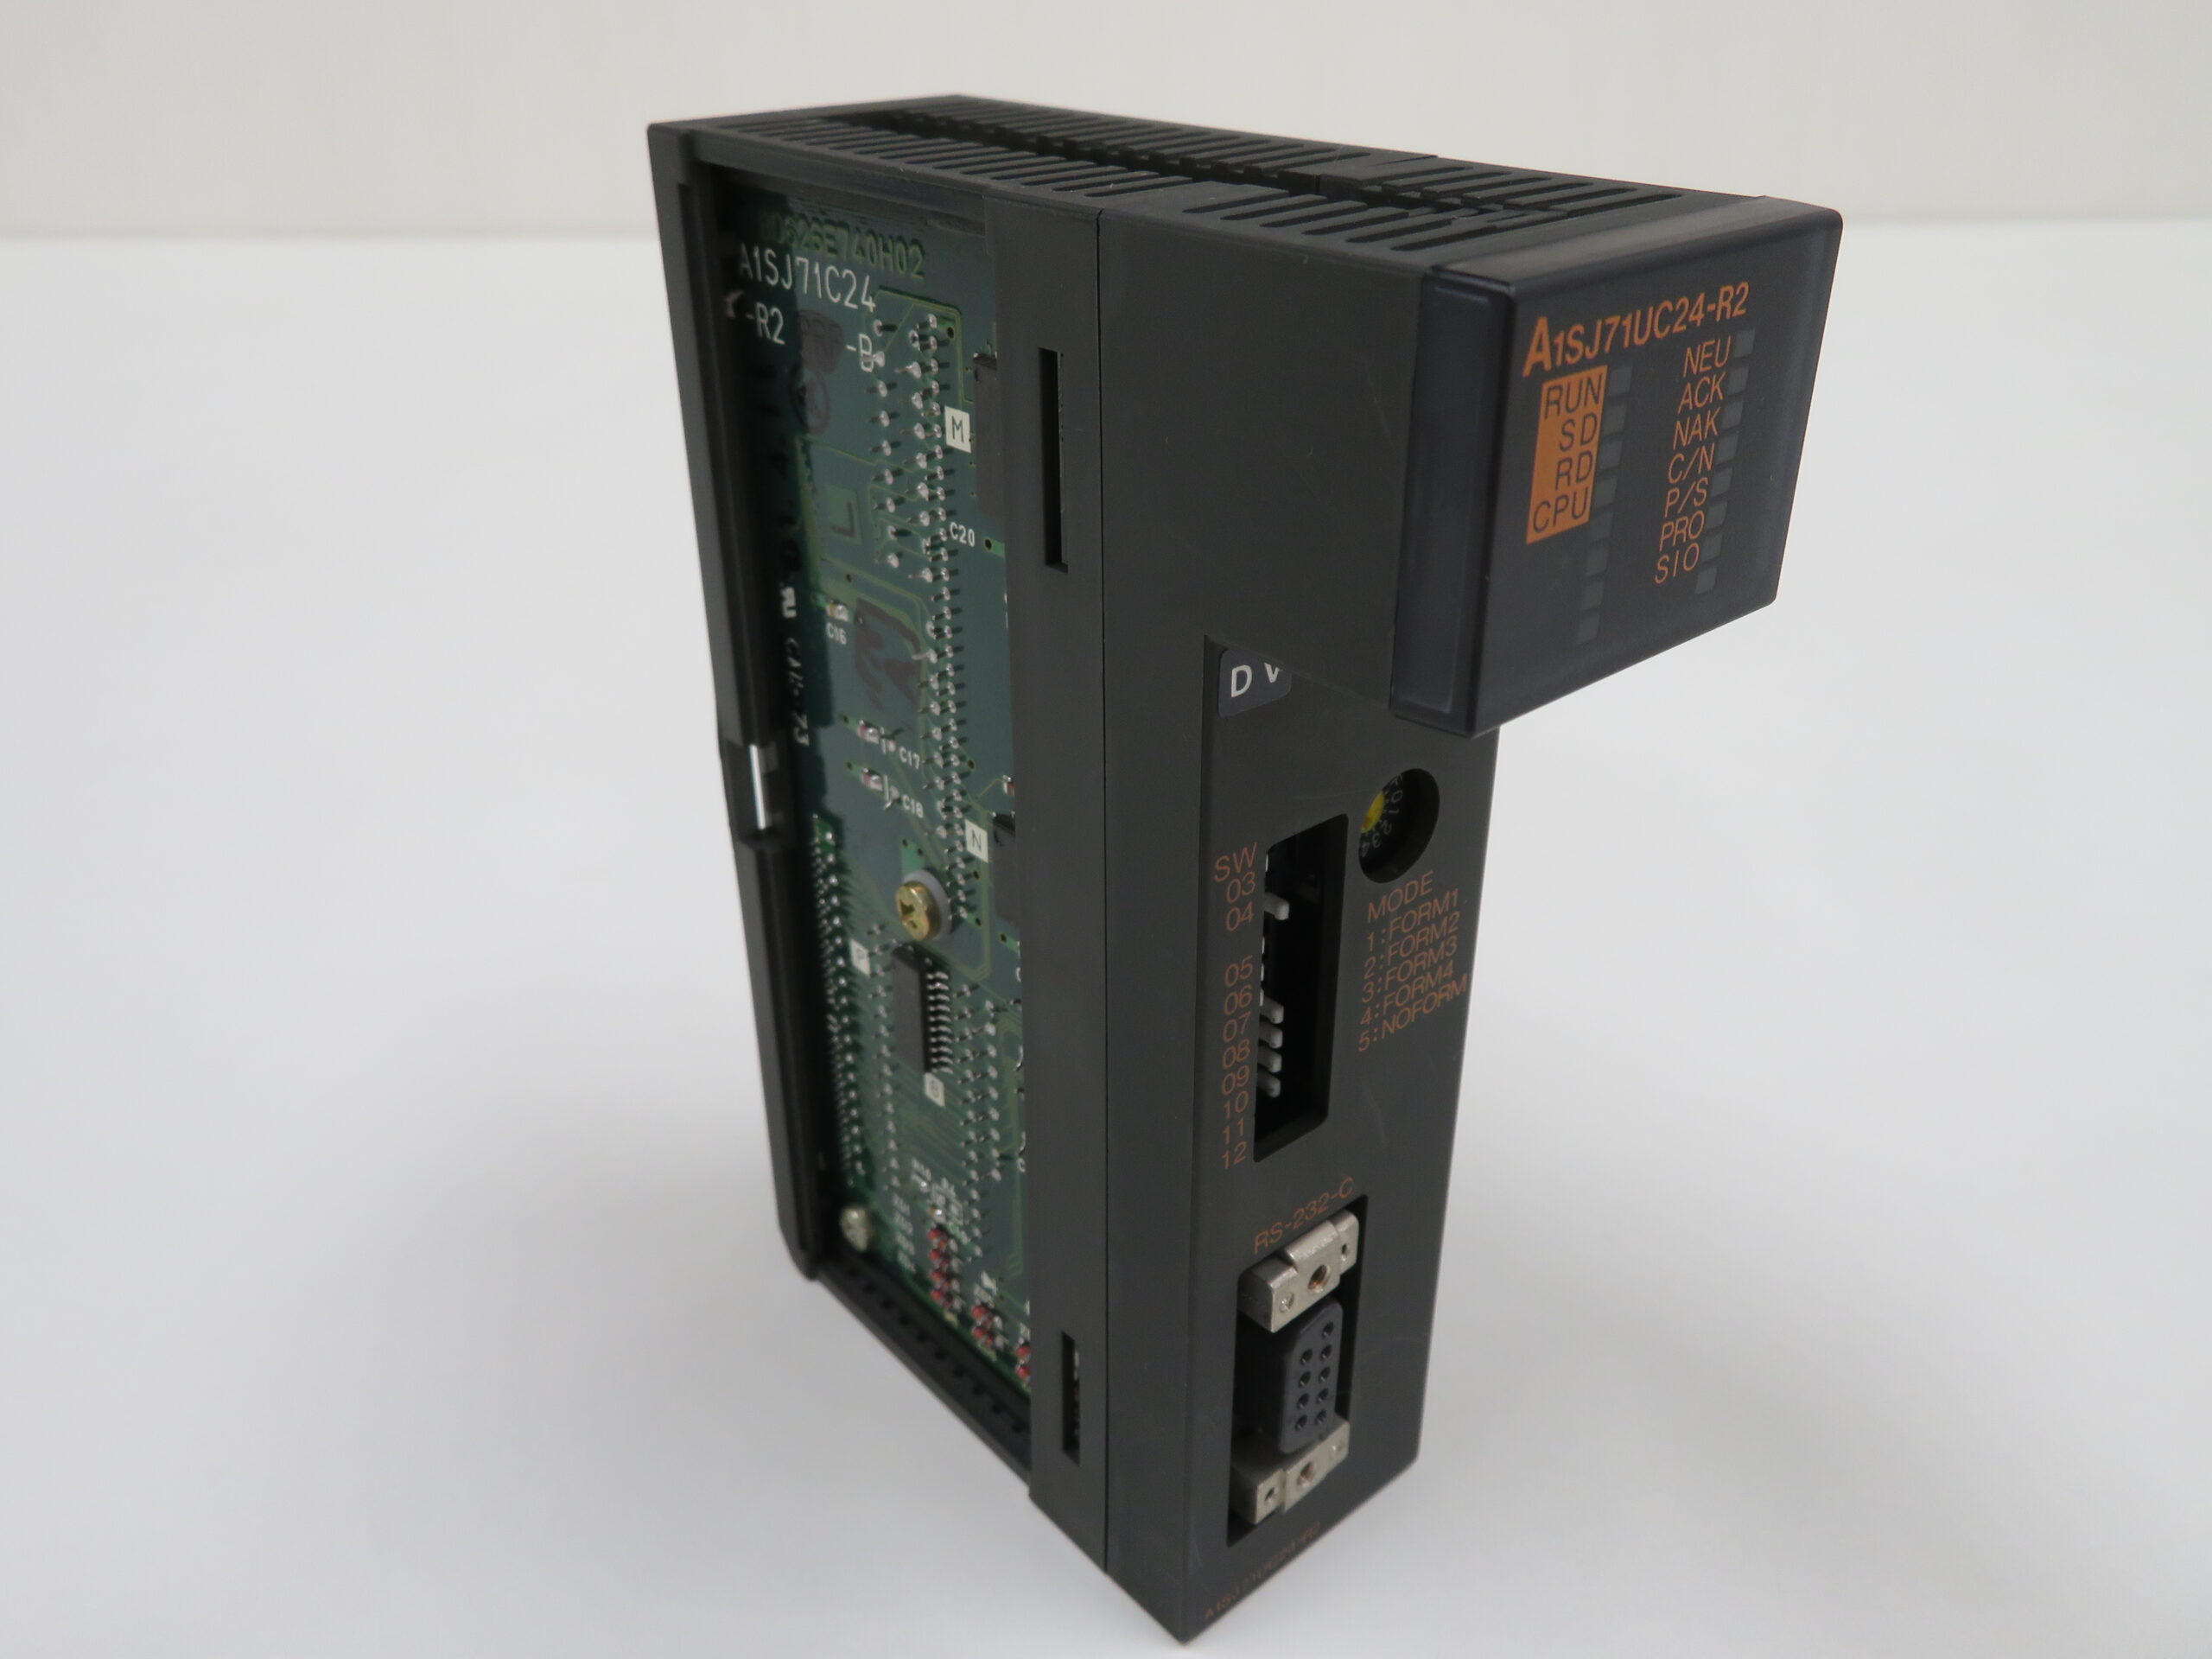 三菱電機 計算機リンクユニット A1SJ71UC24-R2 | 2nd FAドットコム 